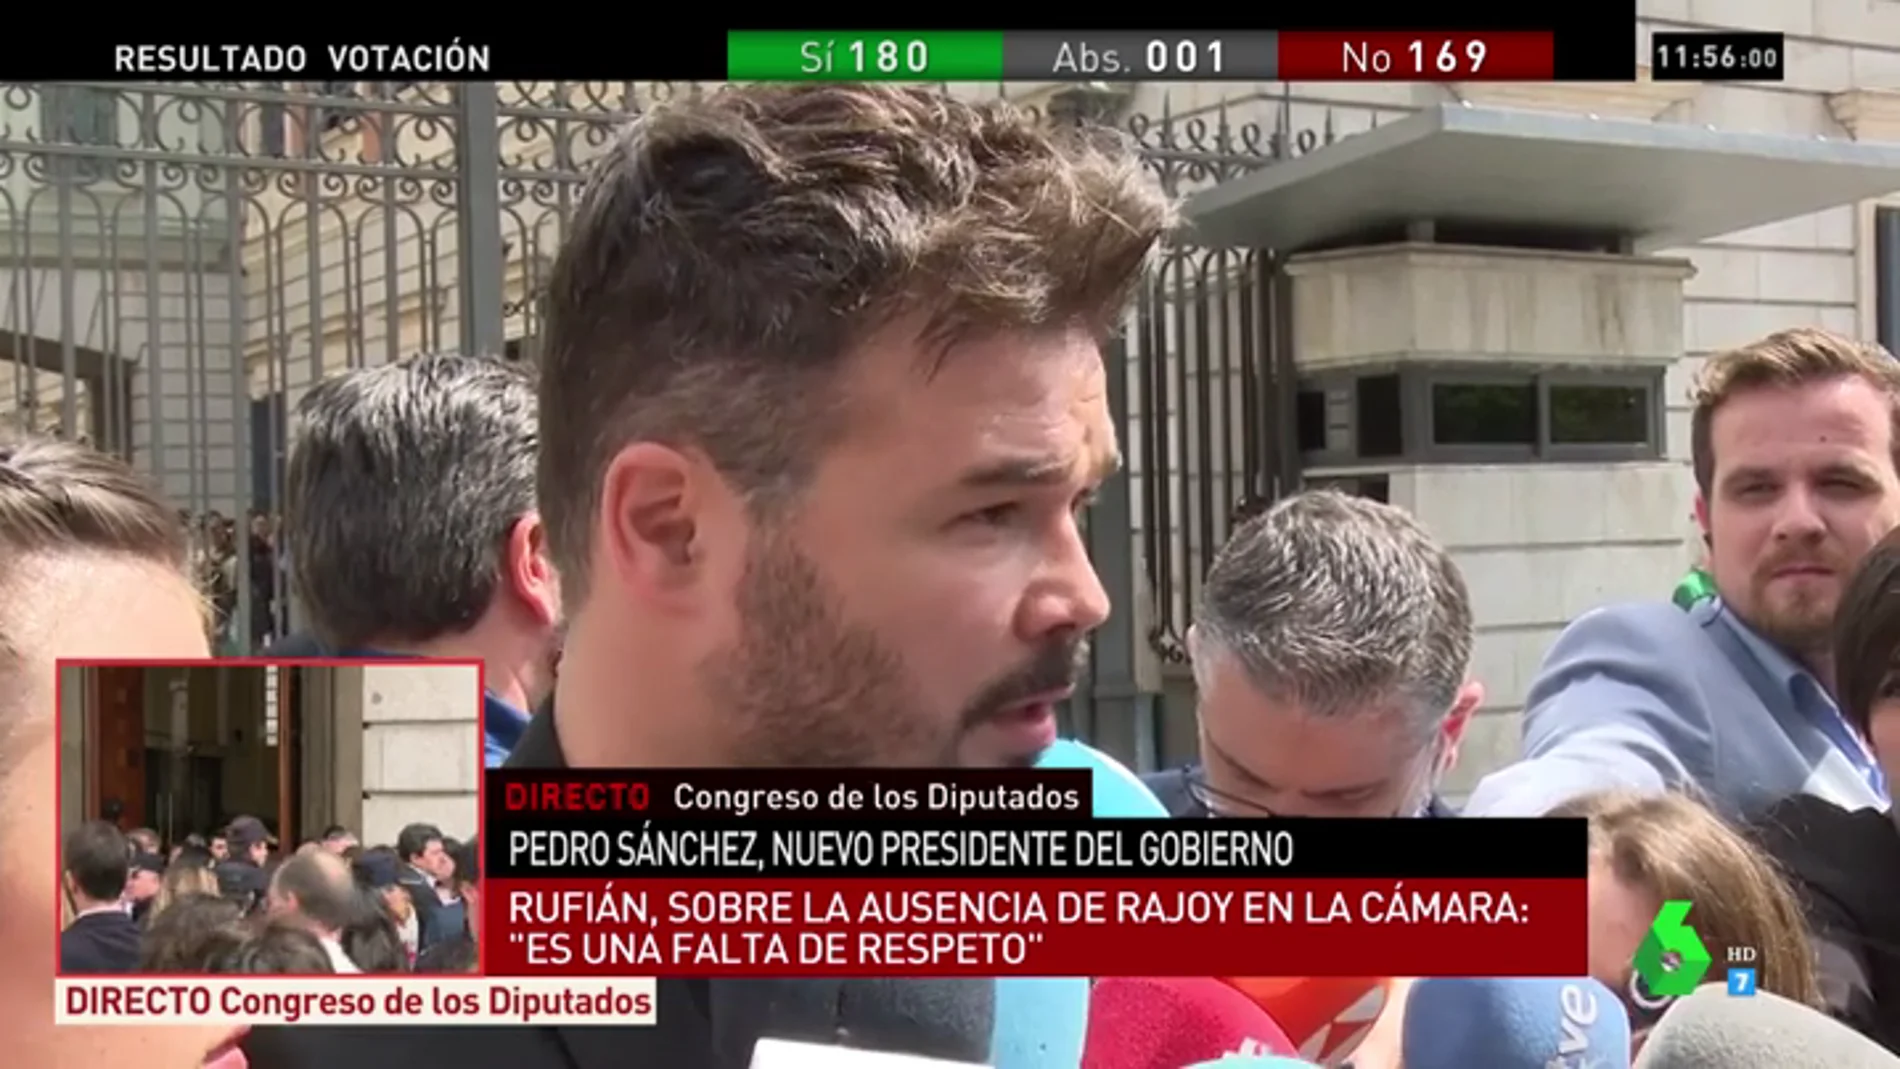 Rufían matiza el voto de ERC a favor del PSOE en la moción de censura: "No le tenemos manía, pero sí memoria"